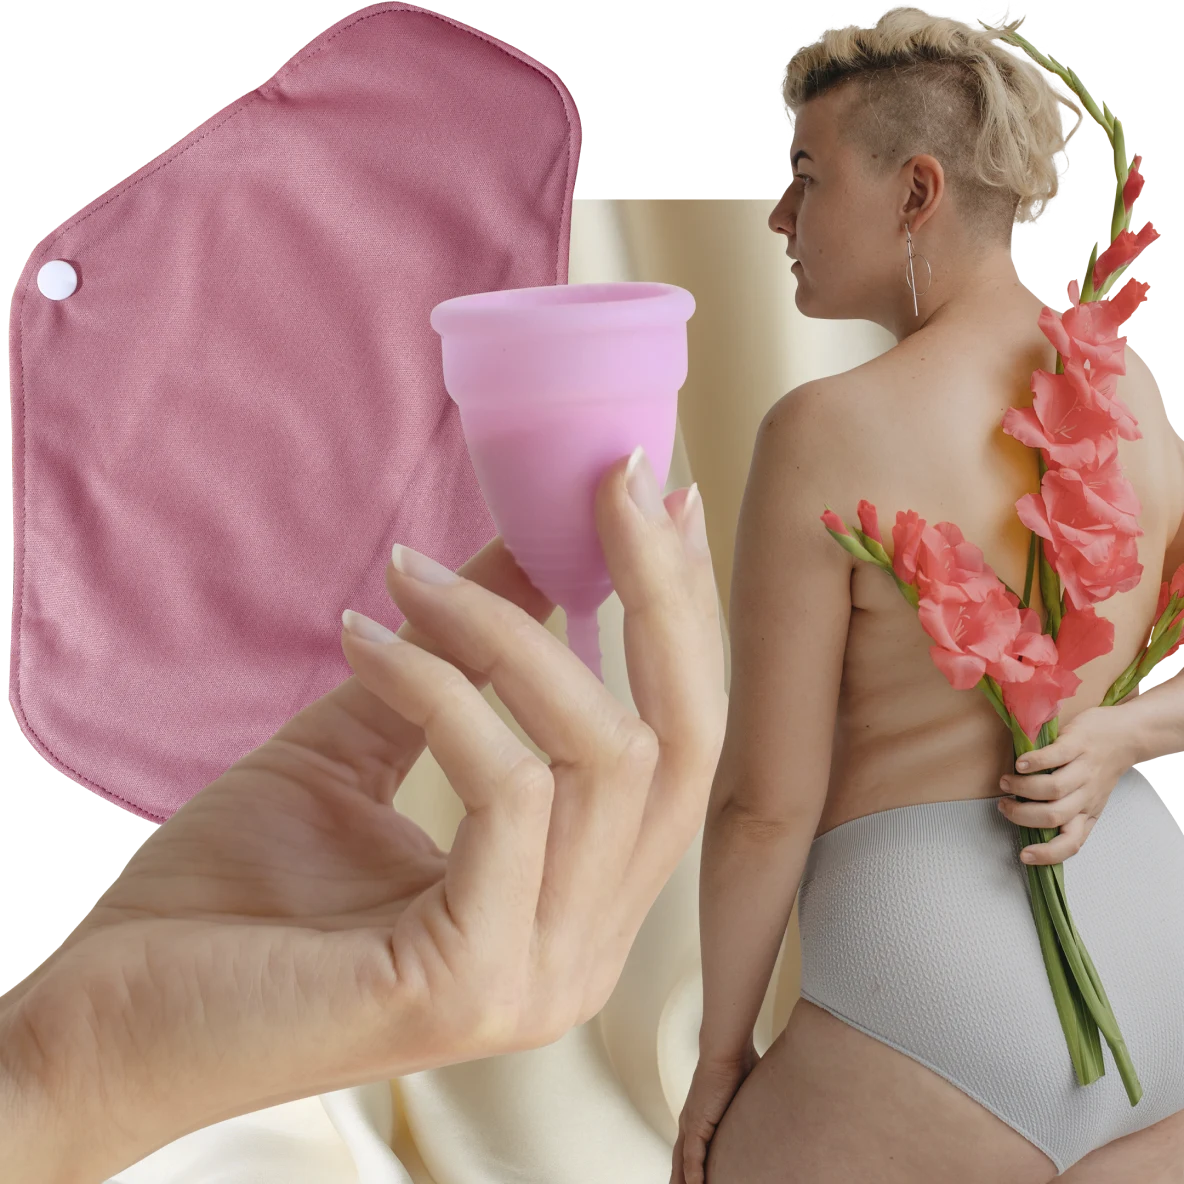 Mano de piel clara sosteniendo una copa menstrual rosa. Toalla sanitaria de tela a la izquierda. Mujer de piel blanca con cabello rubio corto sosteniendo flores rosa en la espalda a la derecha.